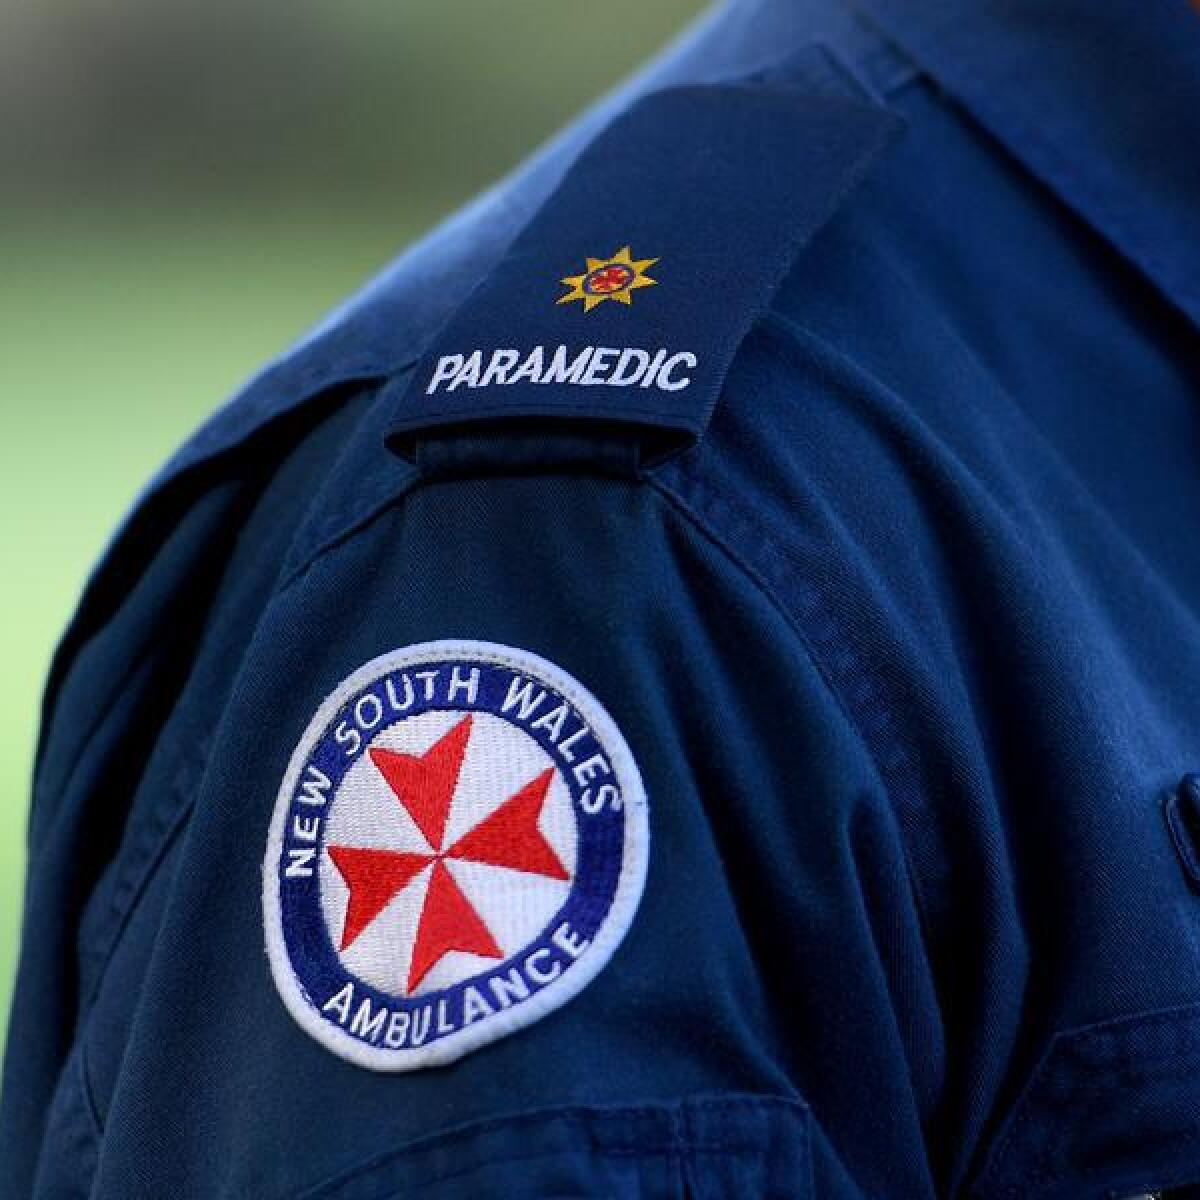 NSW paramedic file image